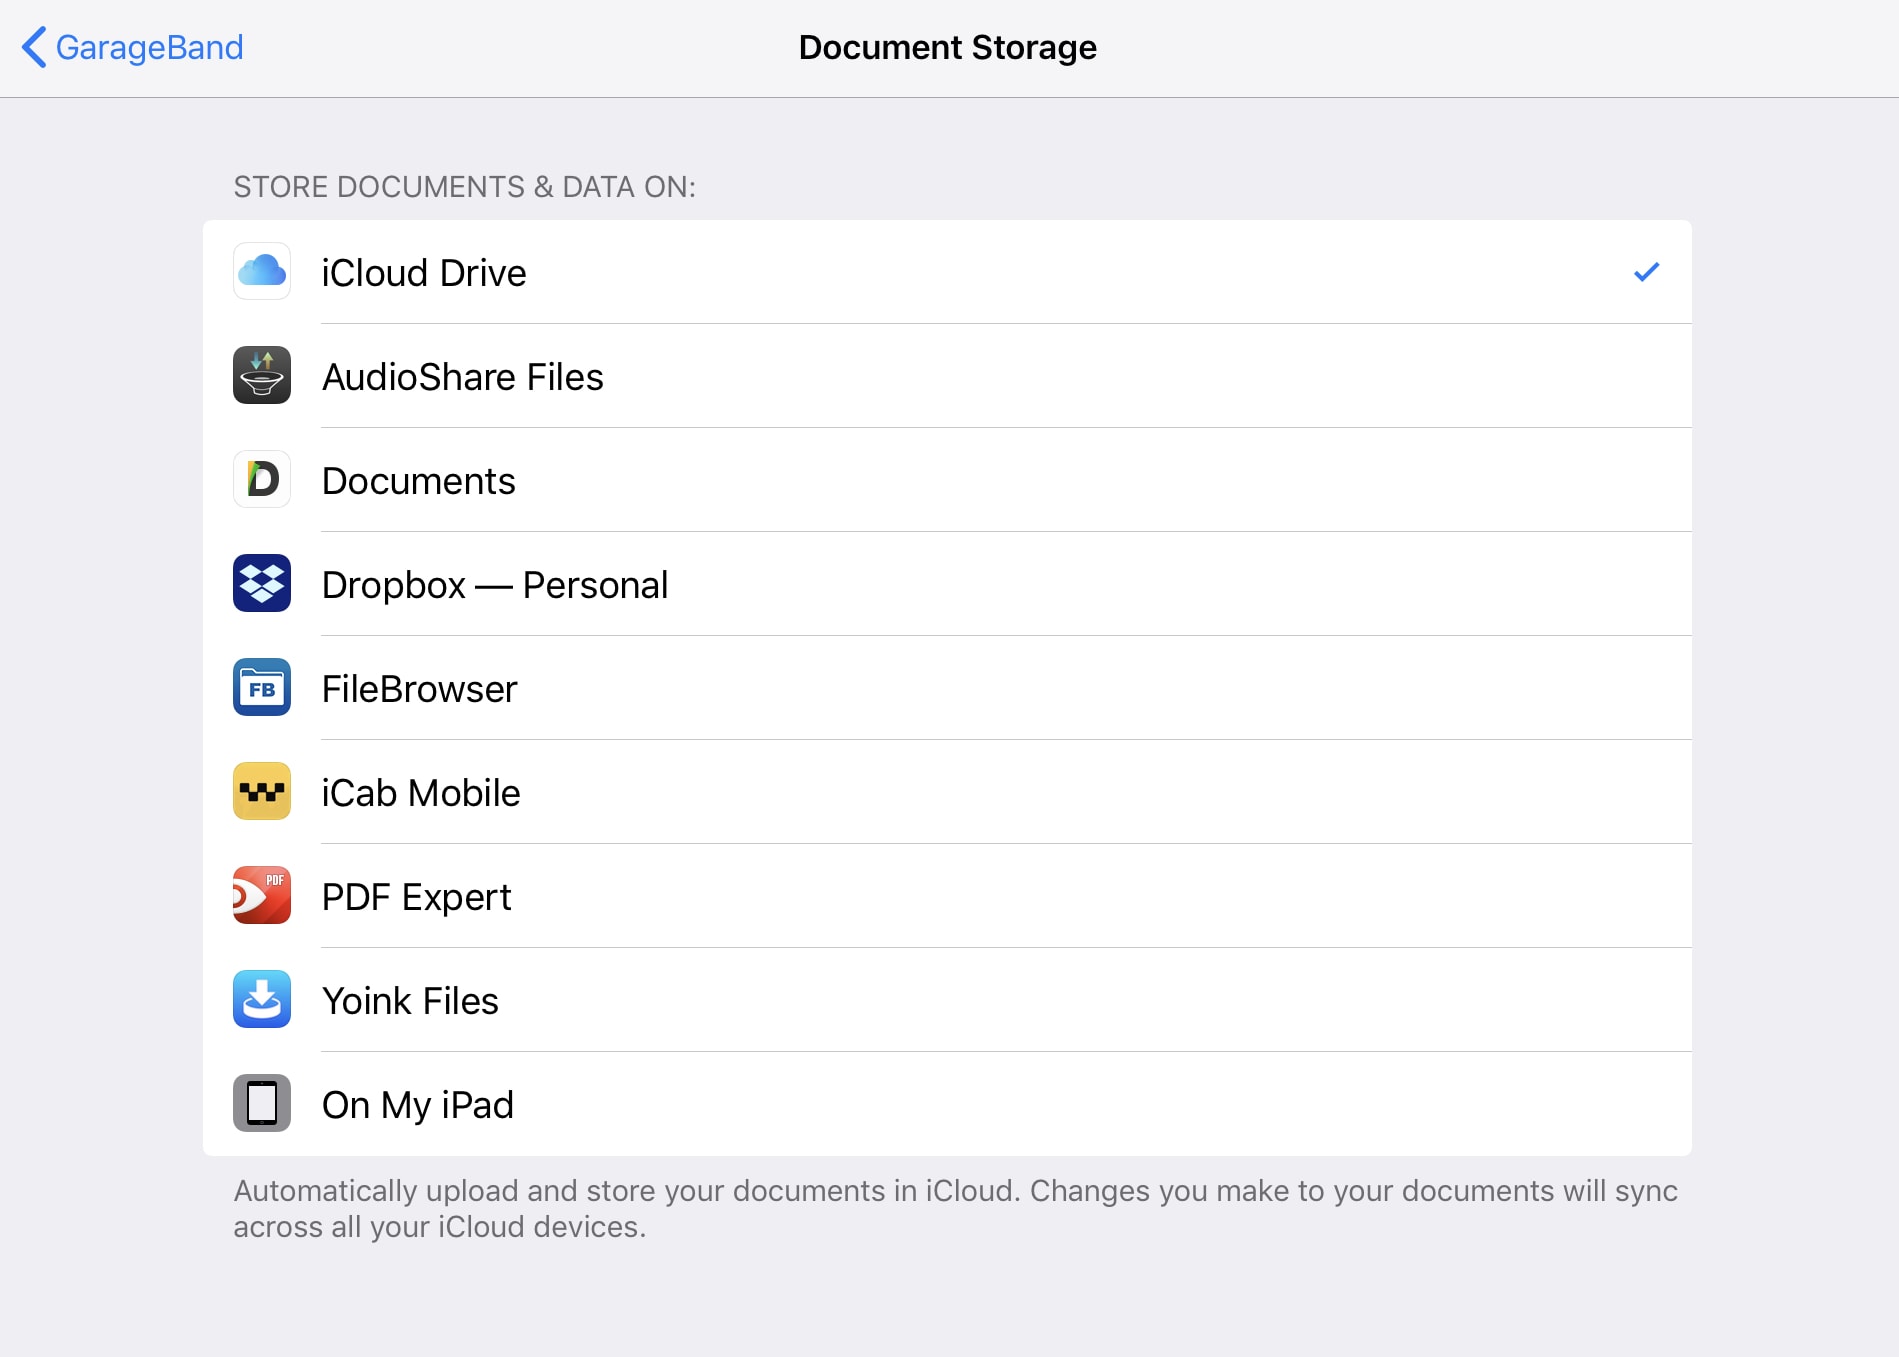 GarageBand’s Document Storage settings.